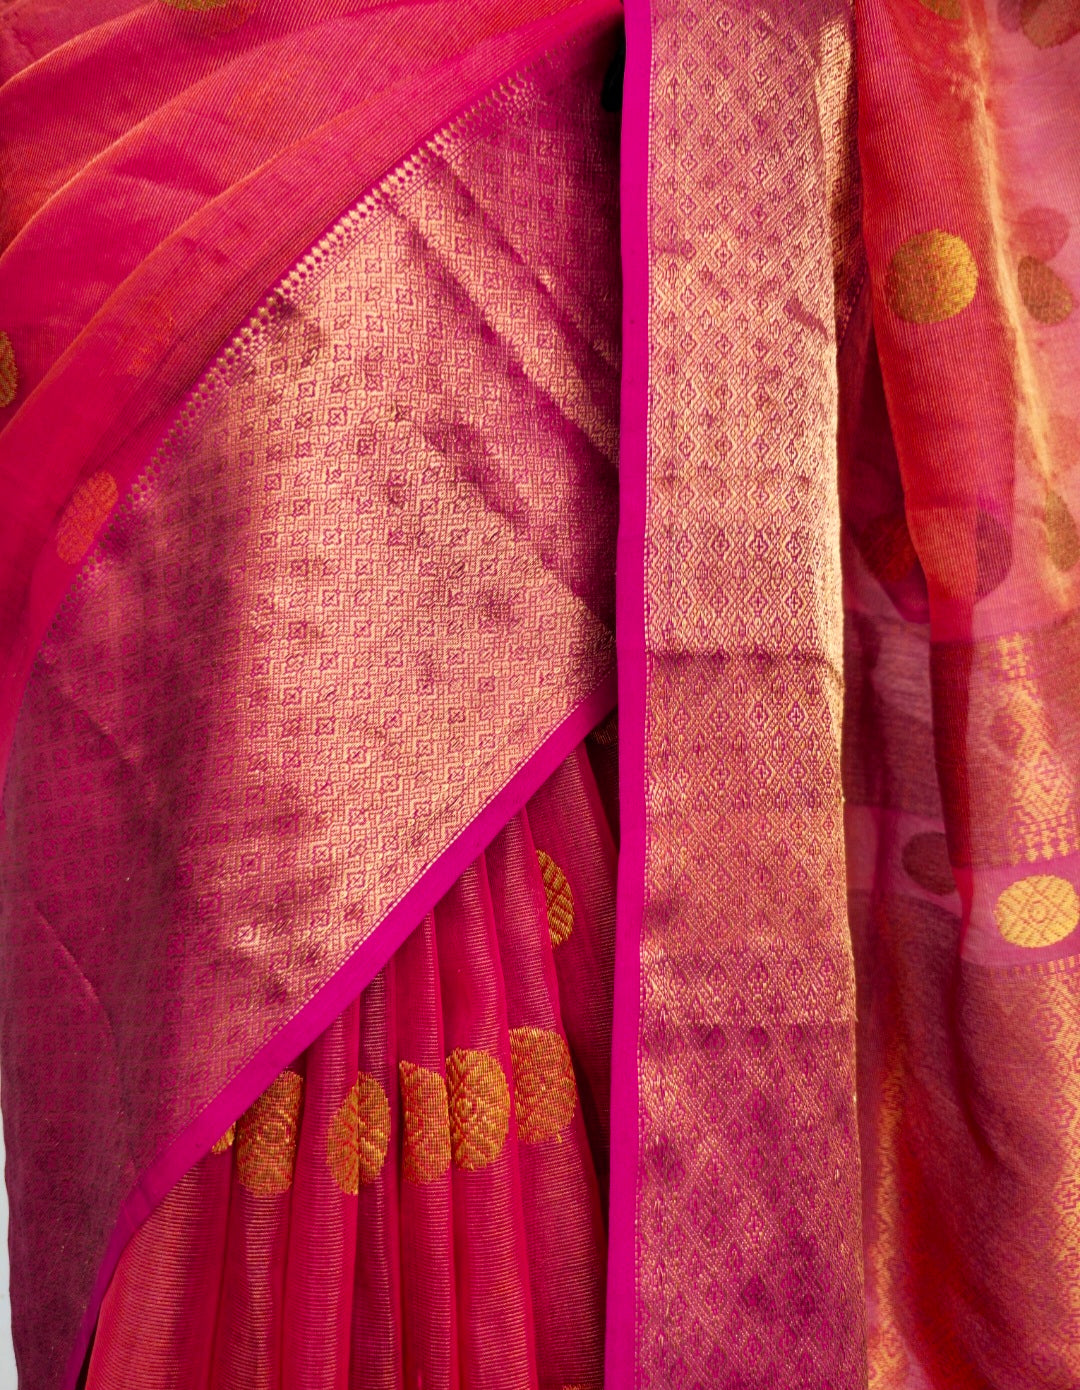 Regal Rani Pink Saree: Weaving the Beauty of Gold Tissue Organza, Gold Butas, and Jaala Palla.